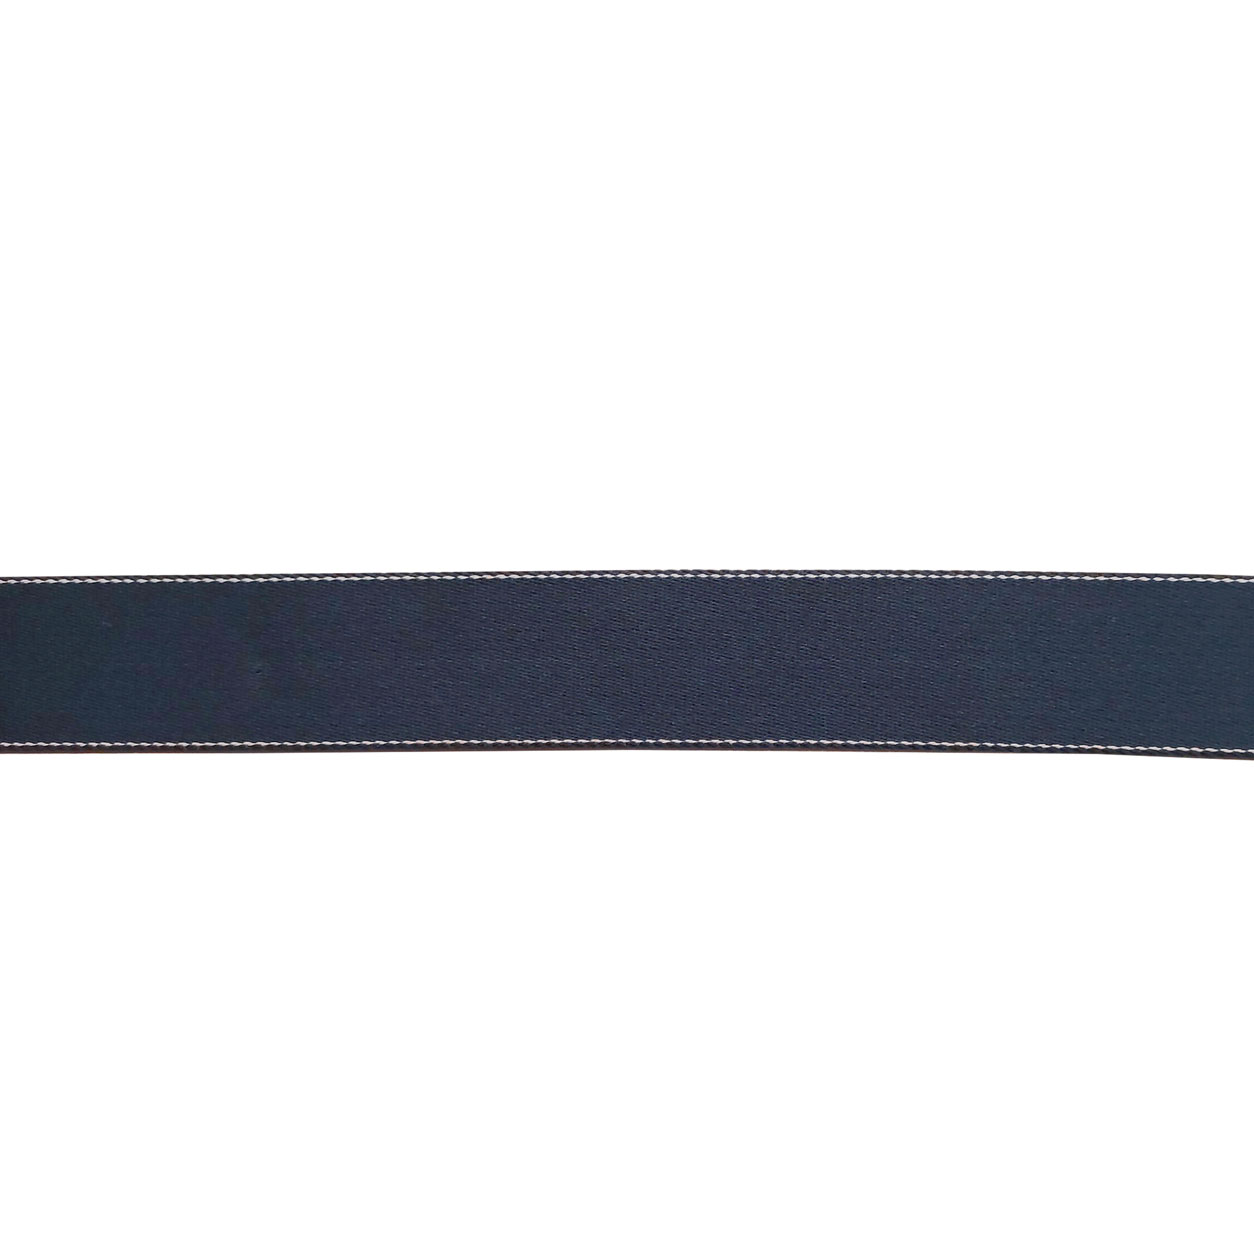 cinghia-per-cintura-40-mm-blu